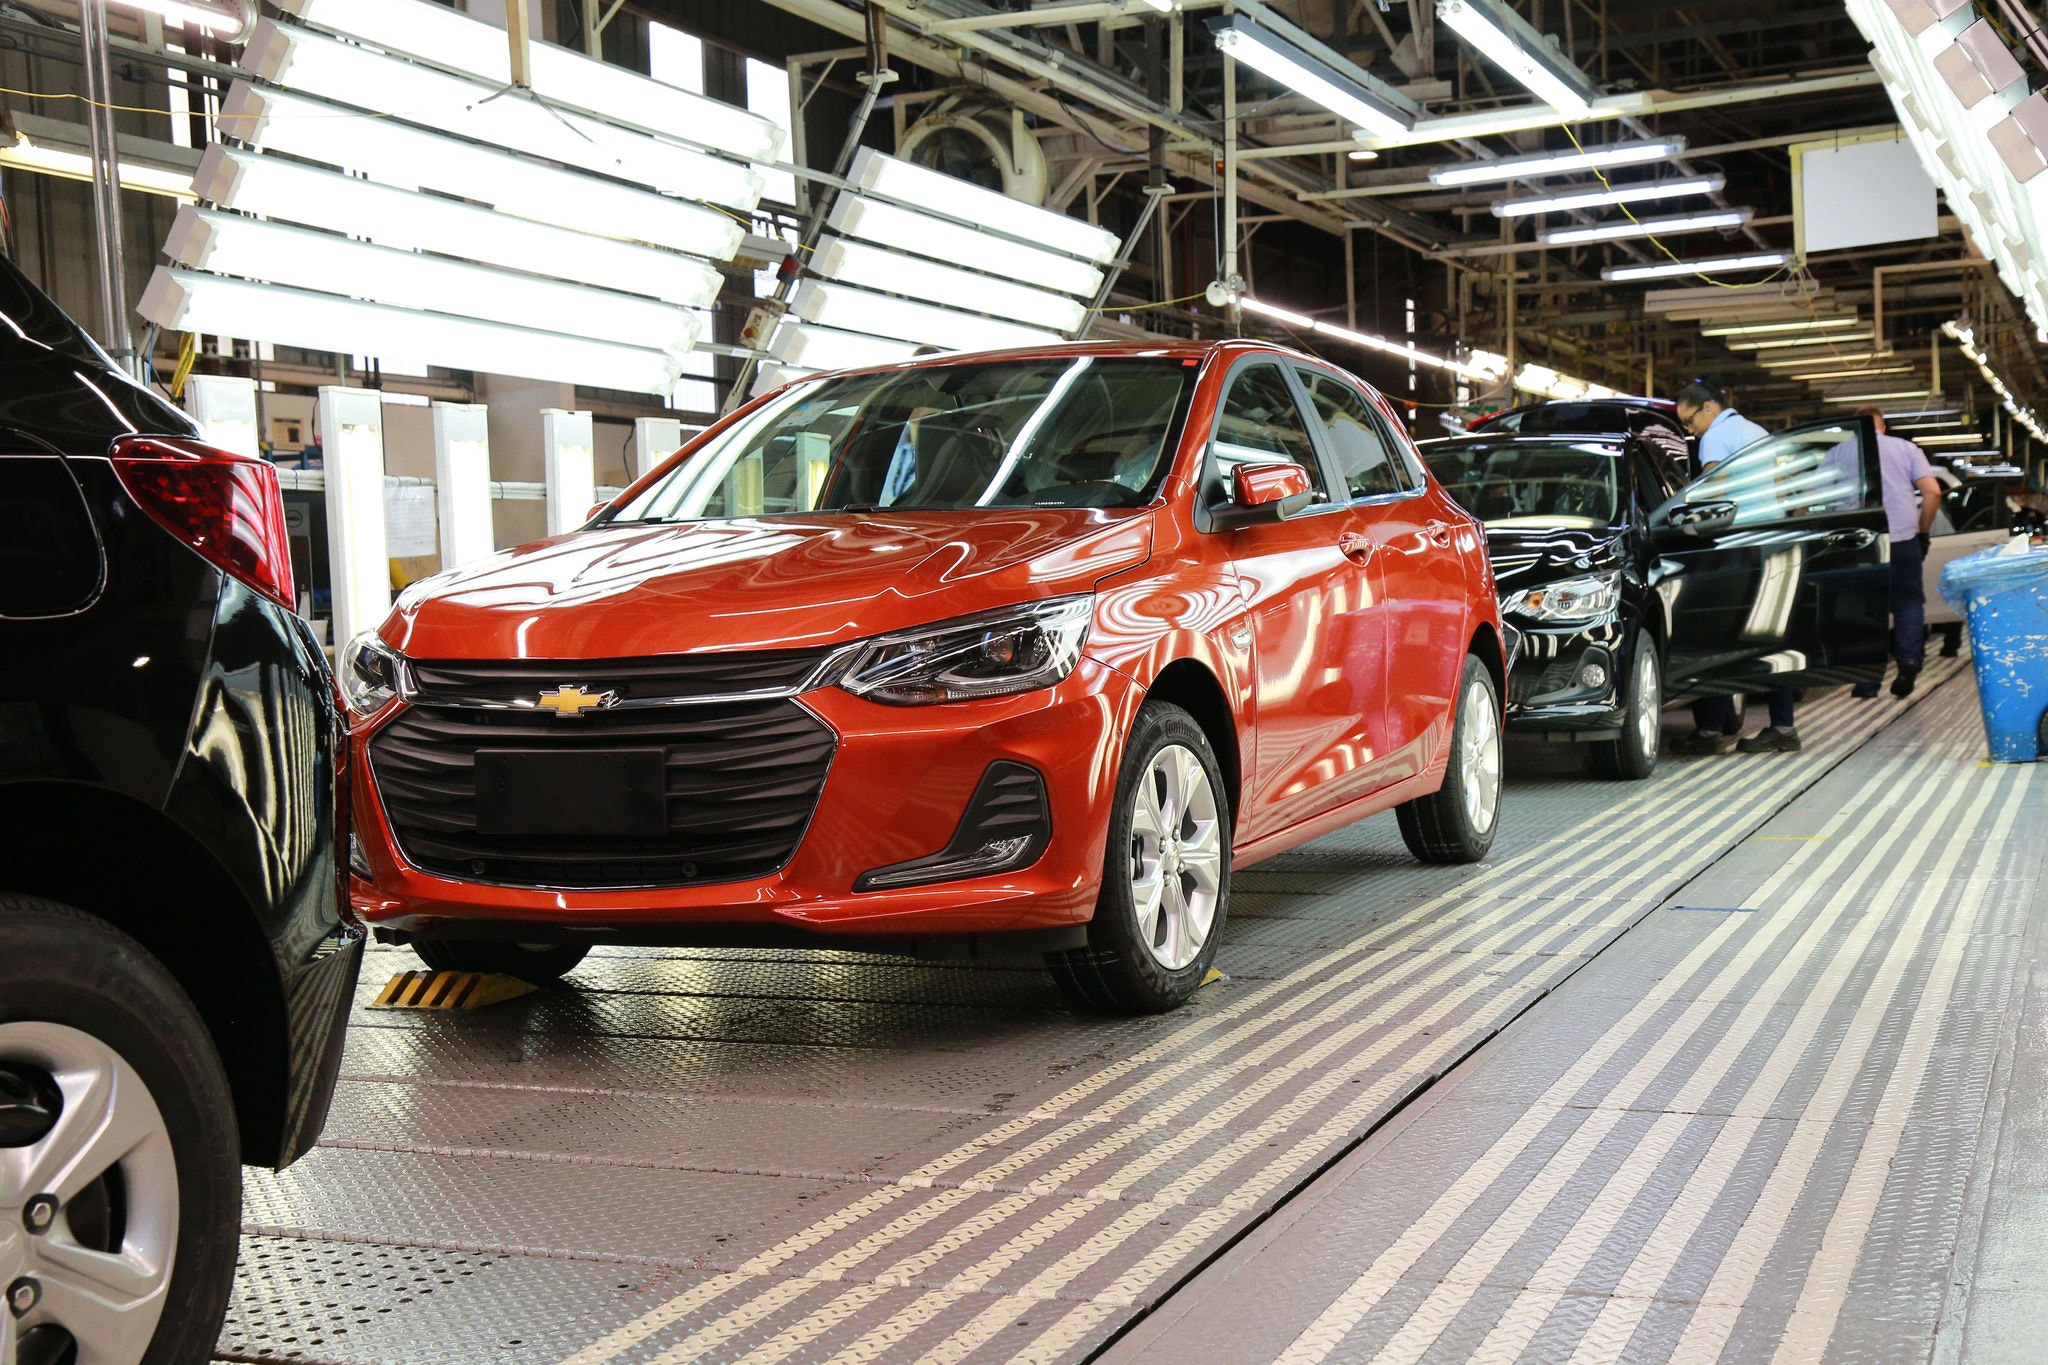 Fábrica da Chevrolet, em Gravataí (RS), produz o Onix e o Onix Plus